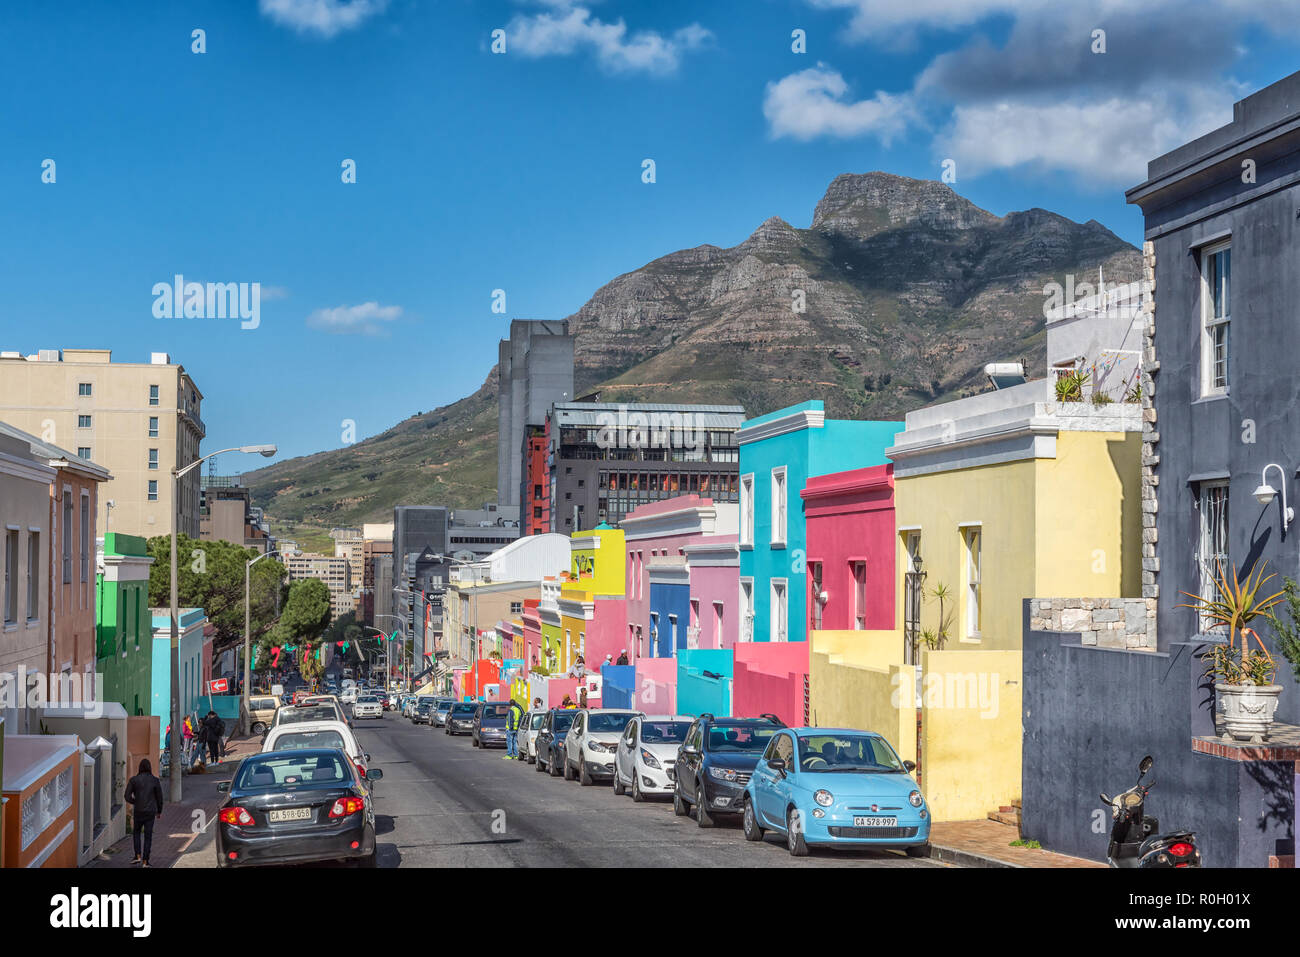 CAPE TOWN, AFRIQUE DU SUD, le 17 août 2018 : une scène de rue, avec des maisons colorées, des personnes et des véhicules, dans le Bo-Kaap à Cape Town dans l'ouest de C Banque D'Images